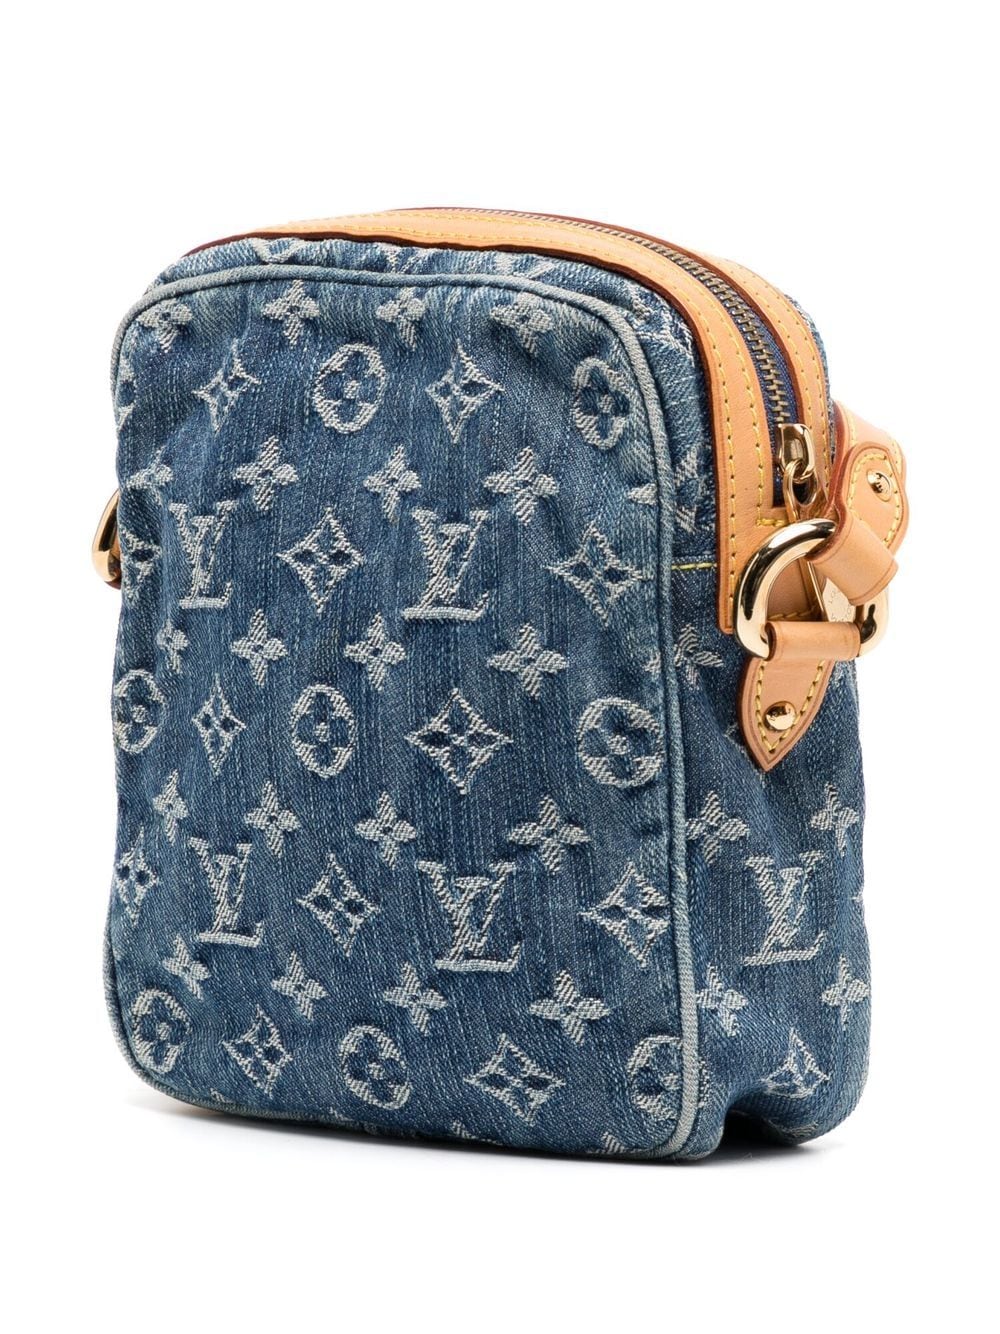 Use a Louis Vuitton Denim handbag as a cross-body ! 